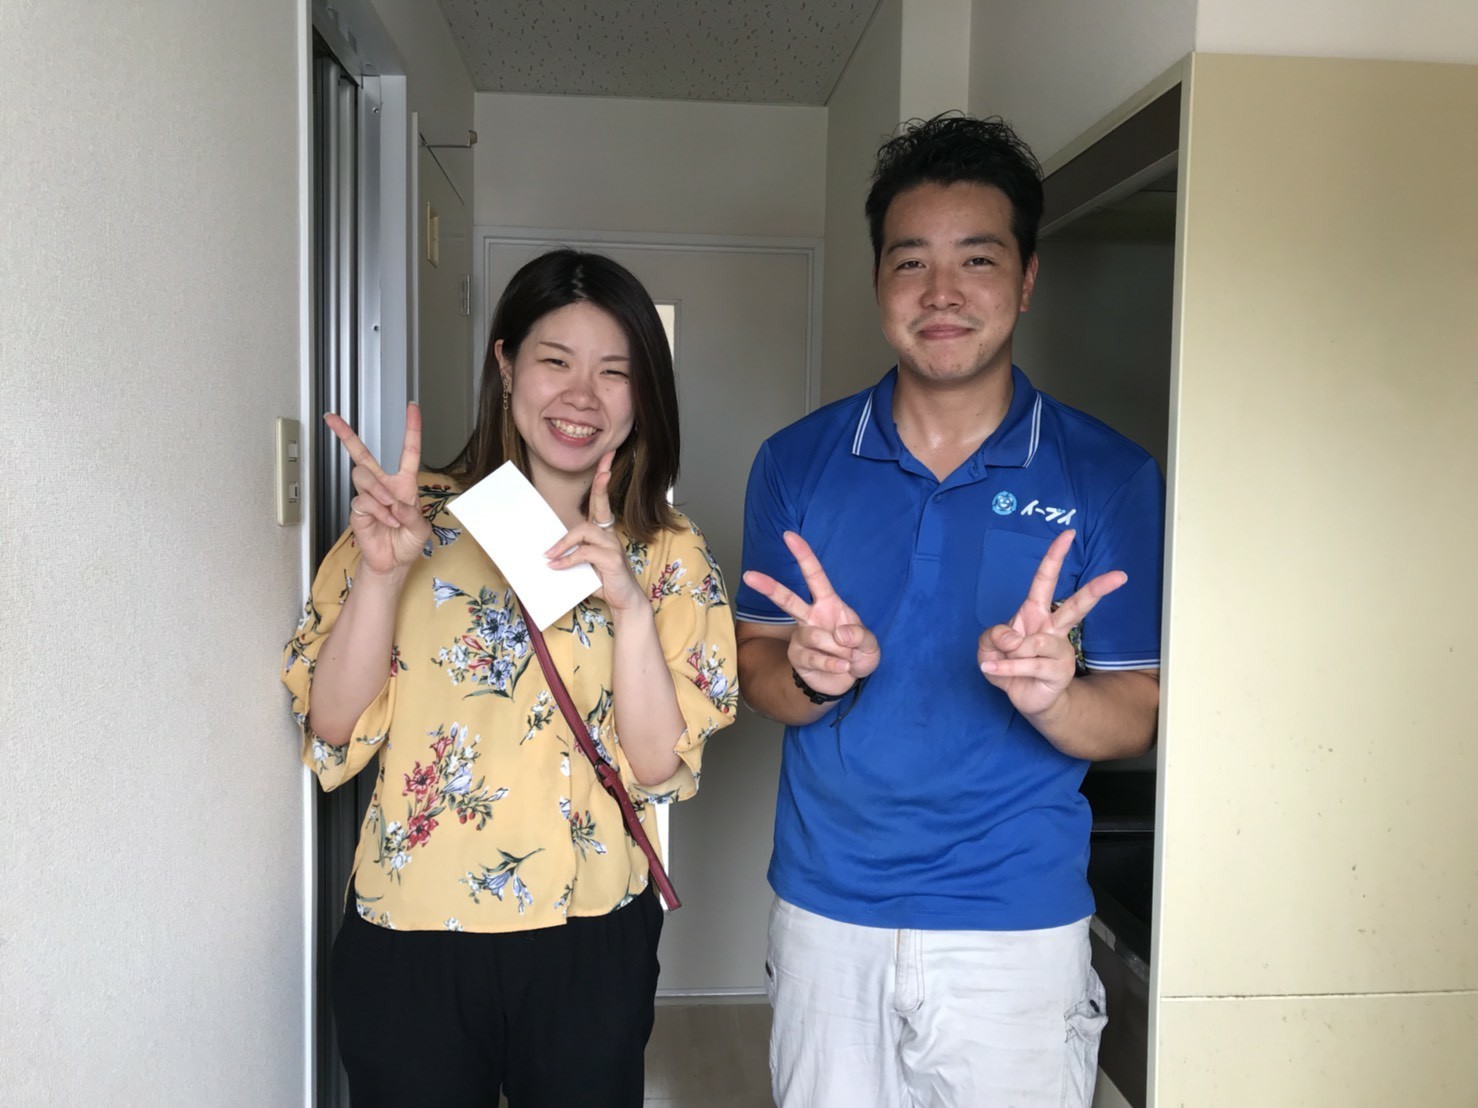 2018年9月2日大阪府大阪市港区のお客様よりお部屋の退去に伴い、お部屋の残置物を全て処分してほしいとの事でご依頼頂きました。